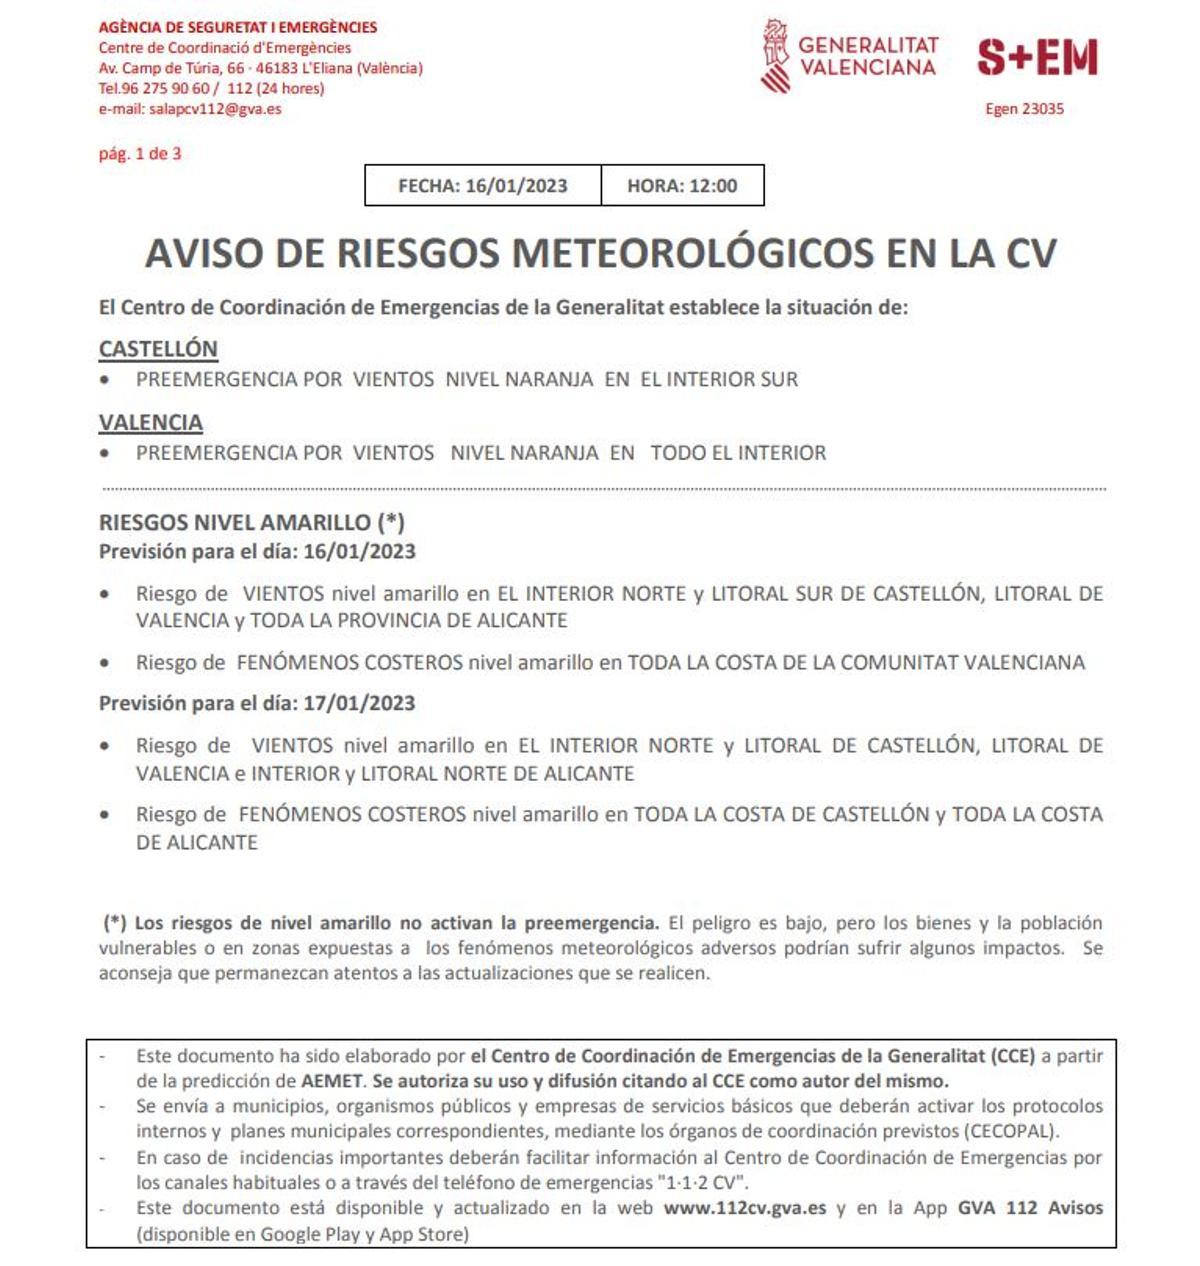 Aviso de riesgos meteorológicos en la Comunidad Valenciana